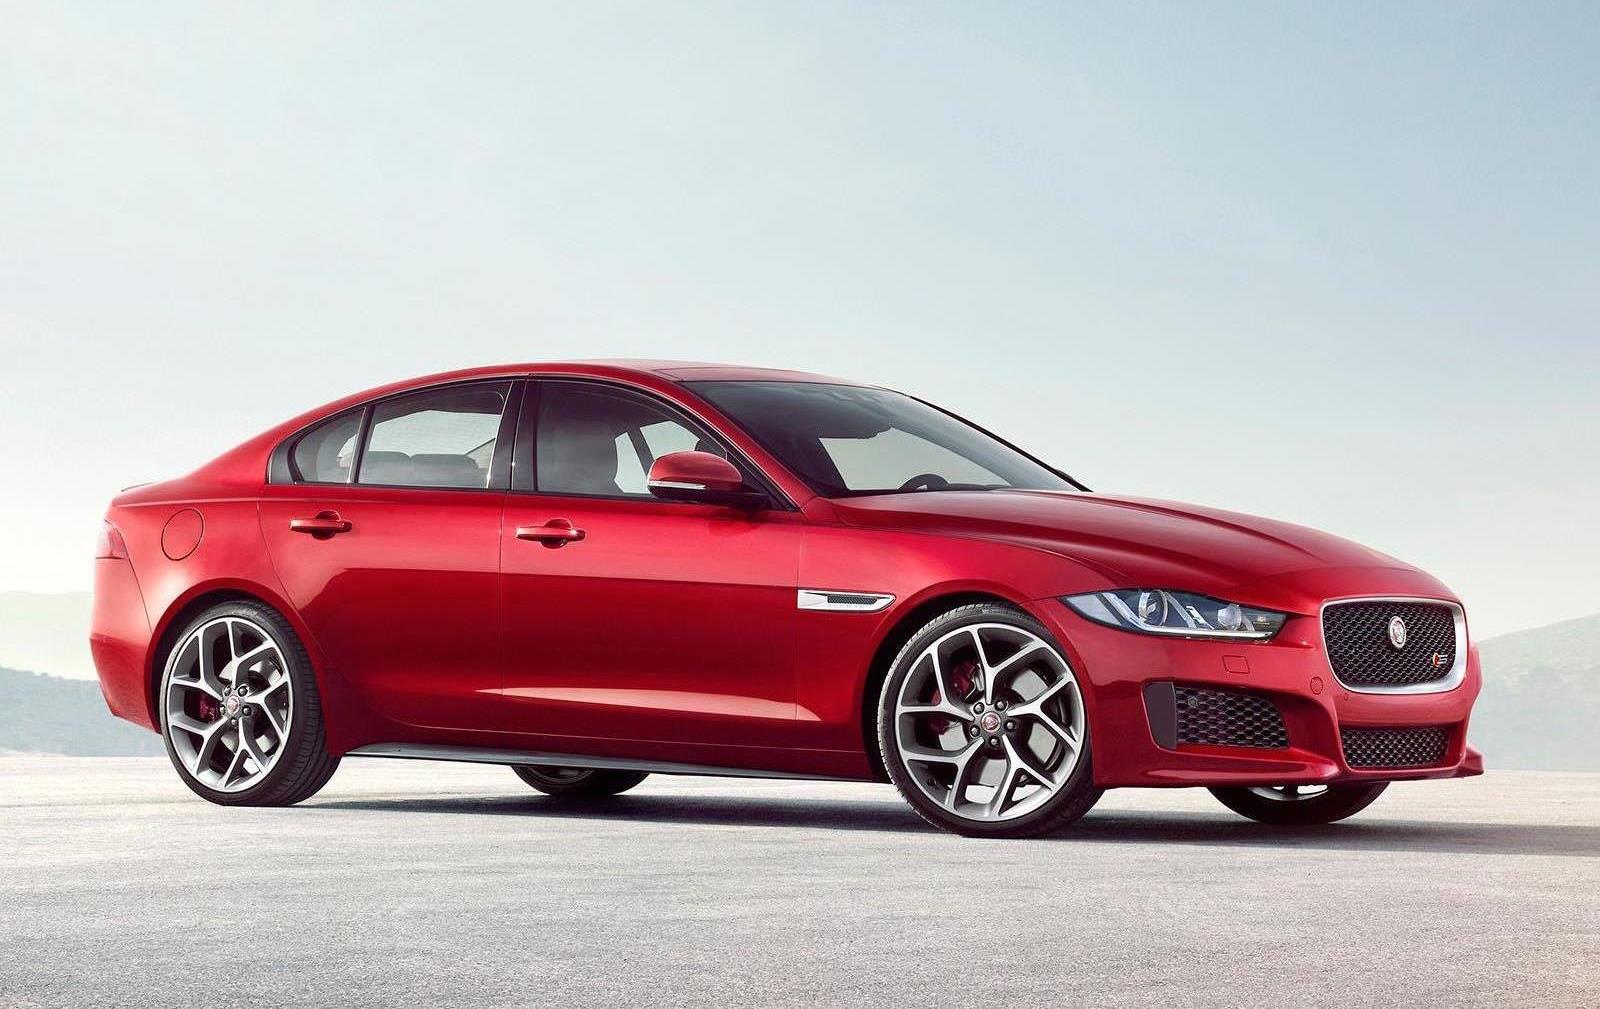 Nya Jaguar XE, en utstuderad sportsedan i mellanklassens premiumsegment och därmed en rak höger mot BMW 3-serie. Här toppmodellen XE S med kompressor-V6 hämtad från de större Jaggorna. Storsäljarna blir dock fyrcylindriga.